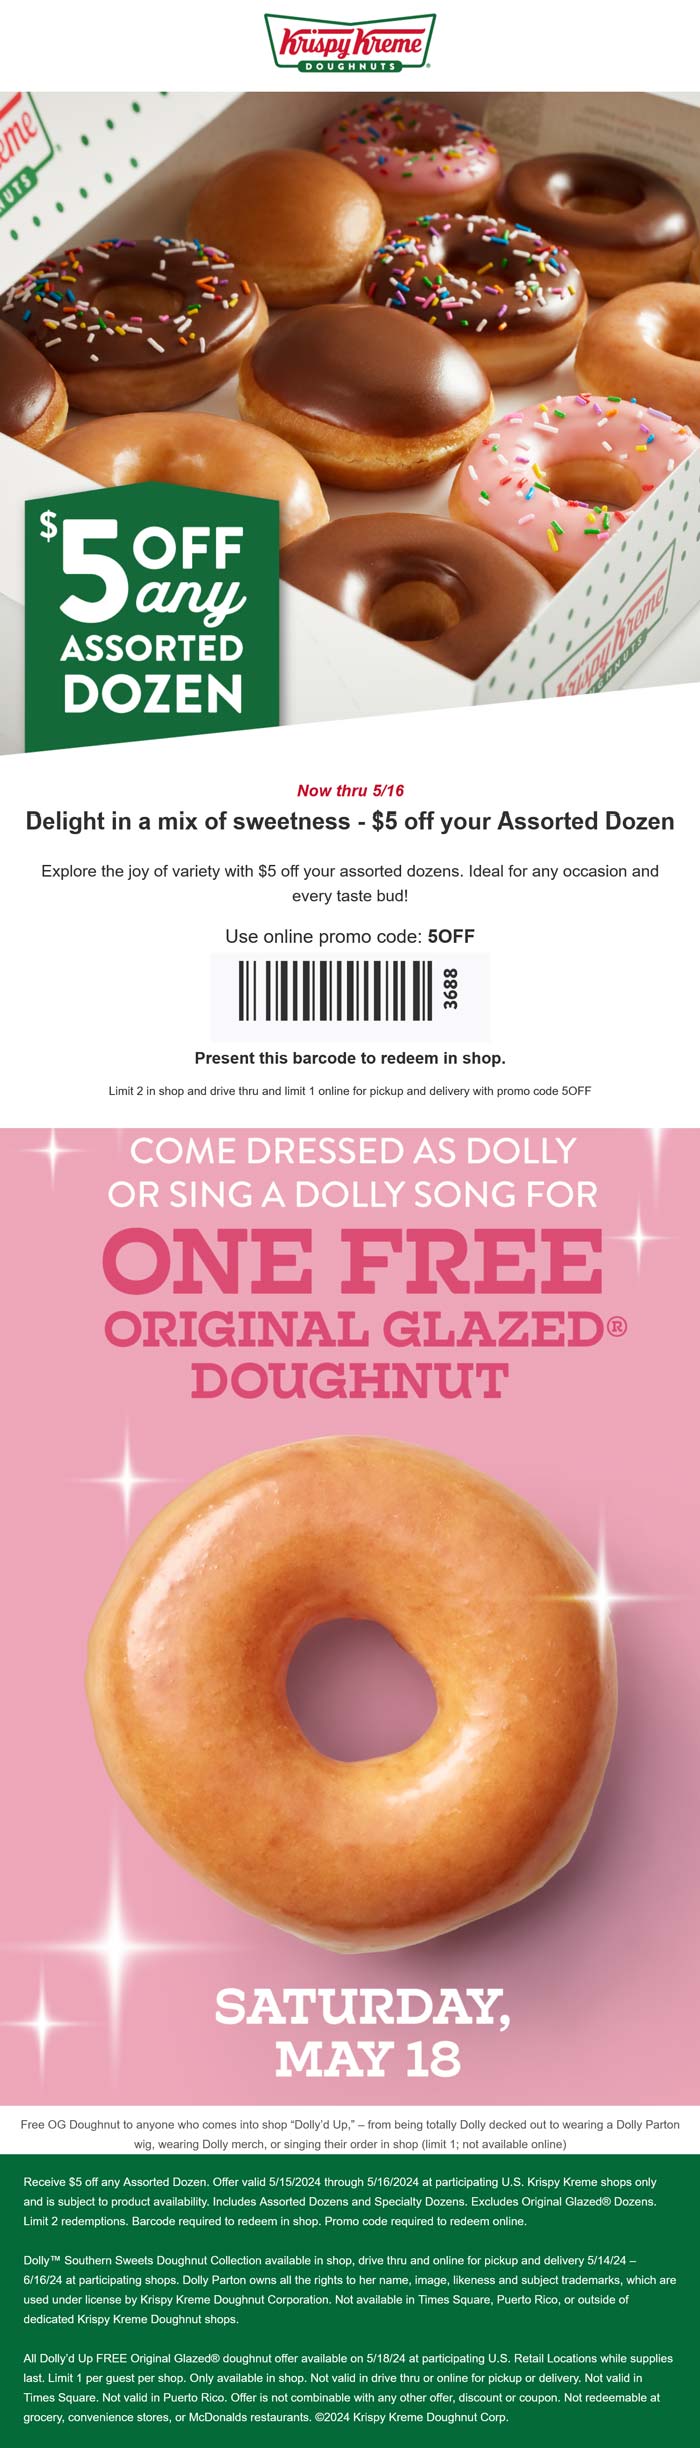 Krispy Kreme restaurants Coupon  $5 off assorted dozen + free doughnut for Dolly fans Saturday at Krispy Kreme #krispykreme 